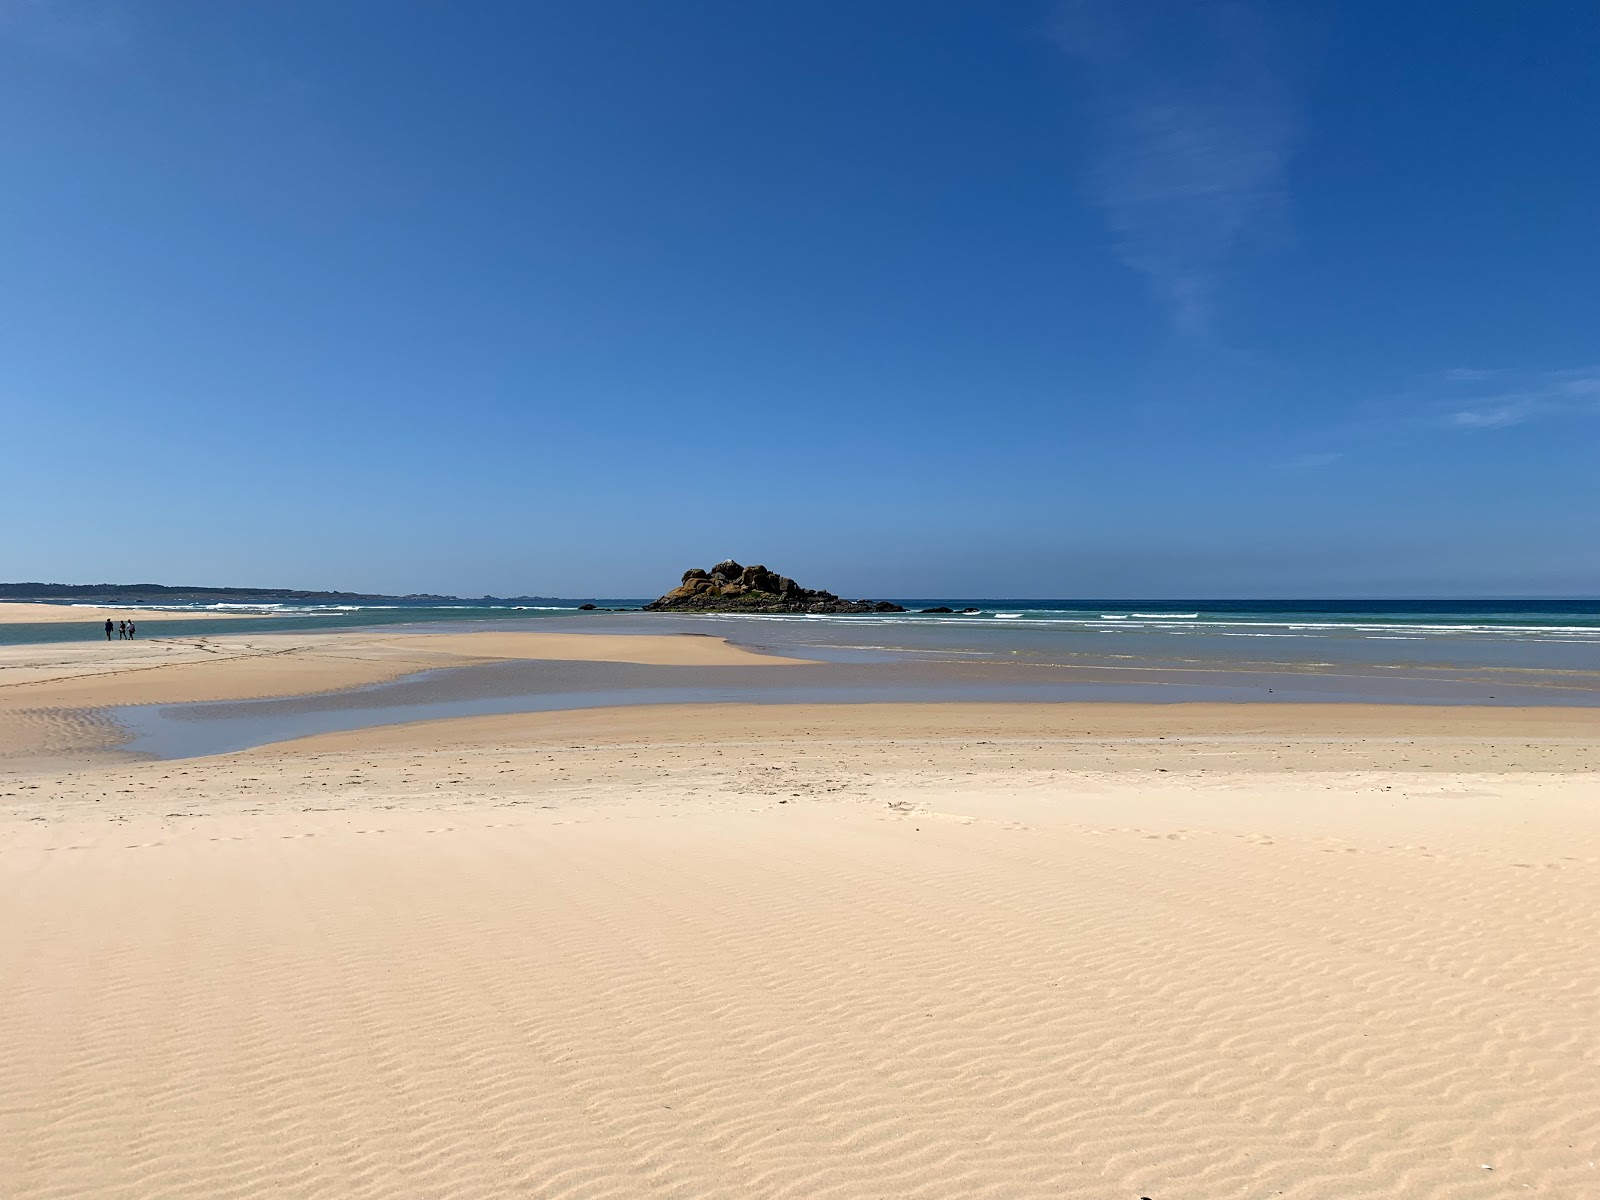 Valokuva Lagoa beachista. pinnalla kirkas hieno hiekka:n kanssa